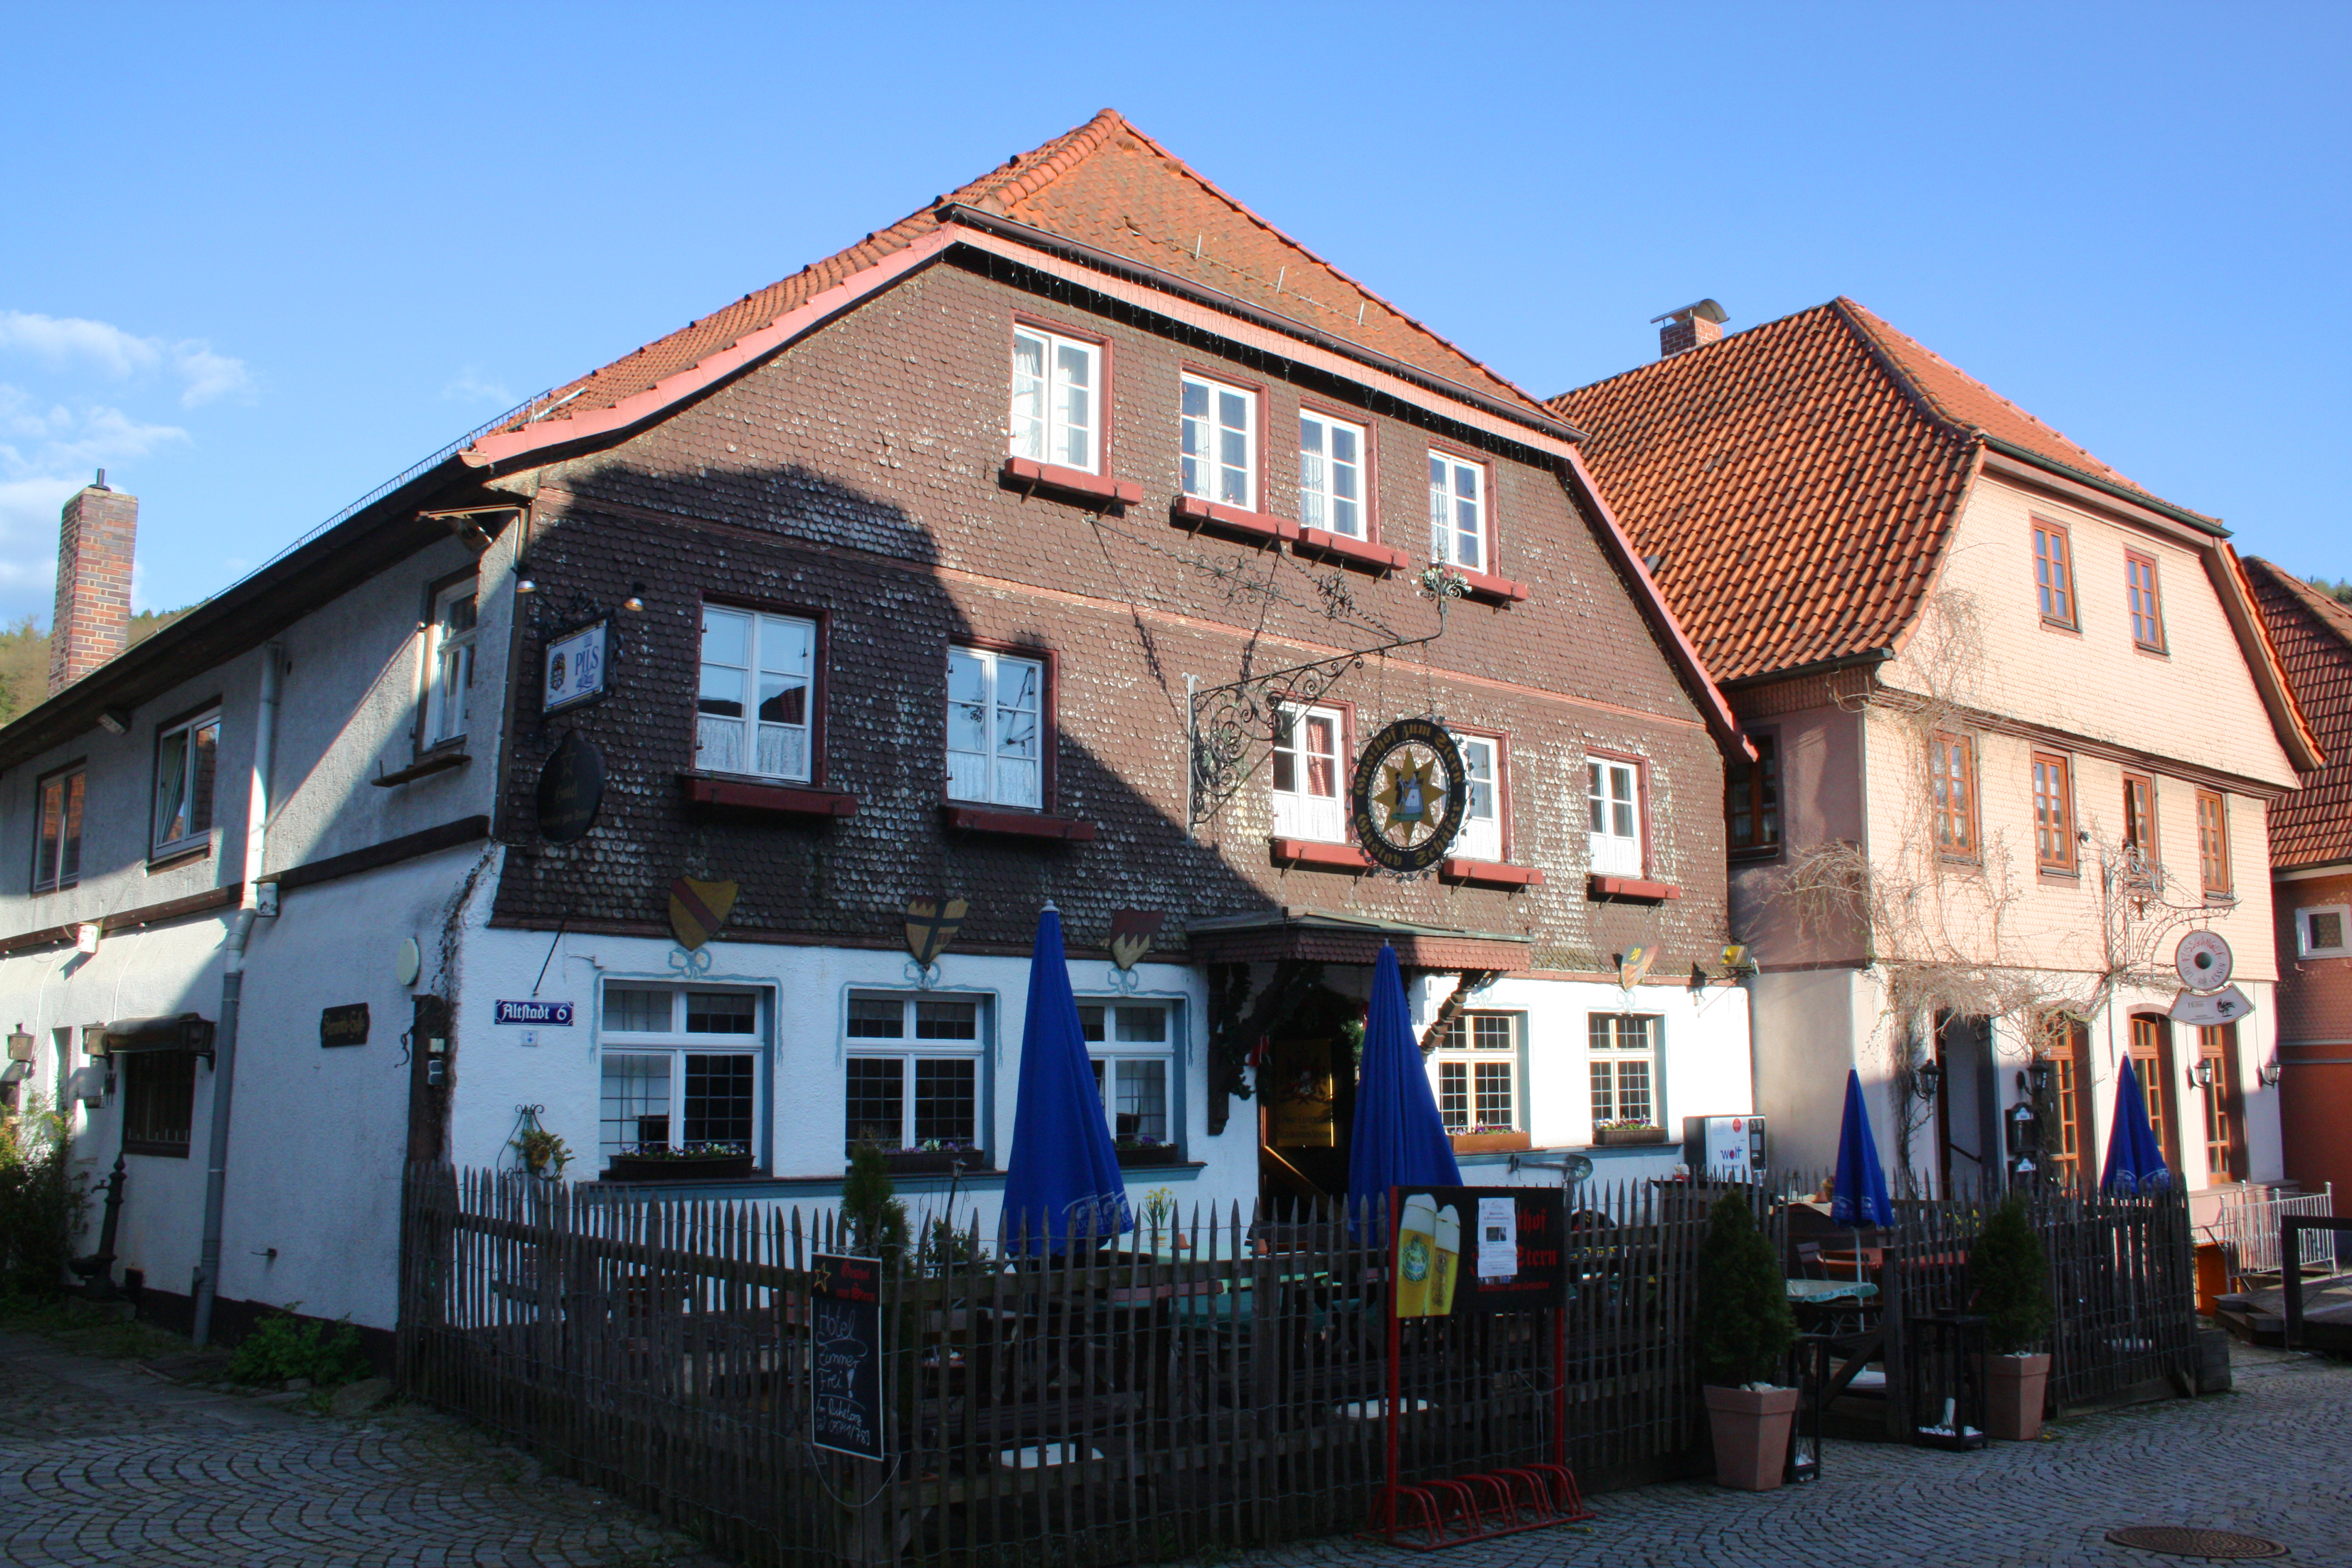 Gasthof zum Stern, Bad Brückenau.
